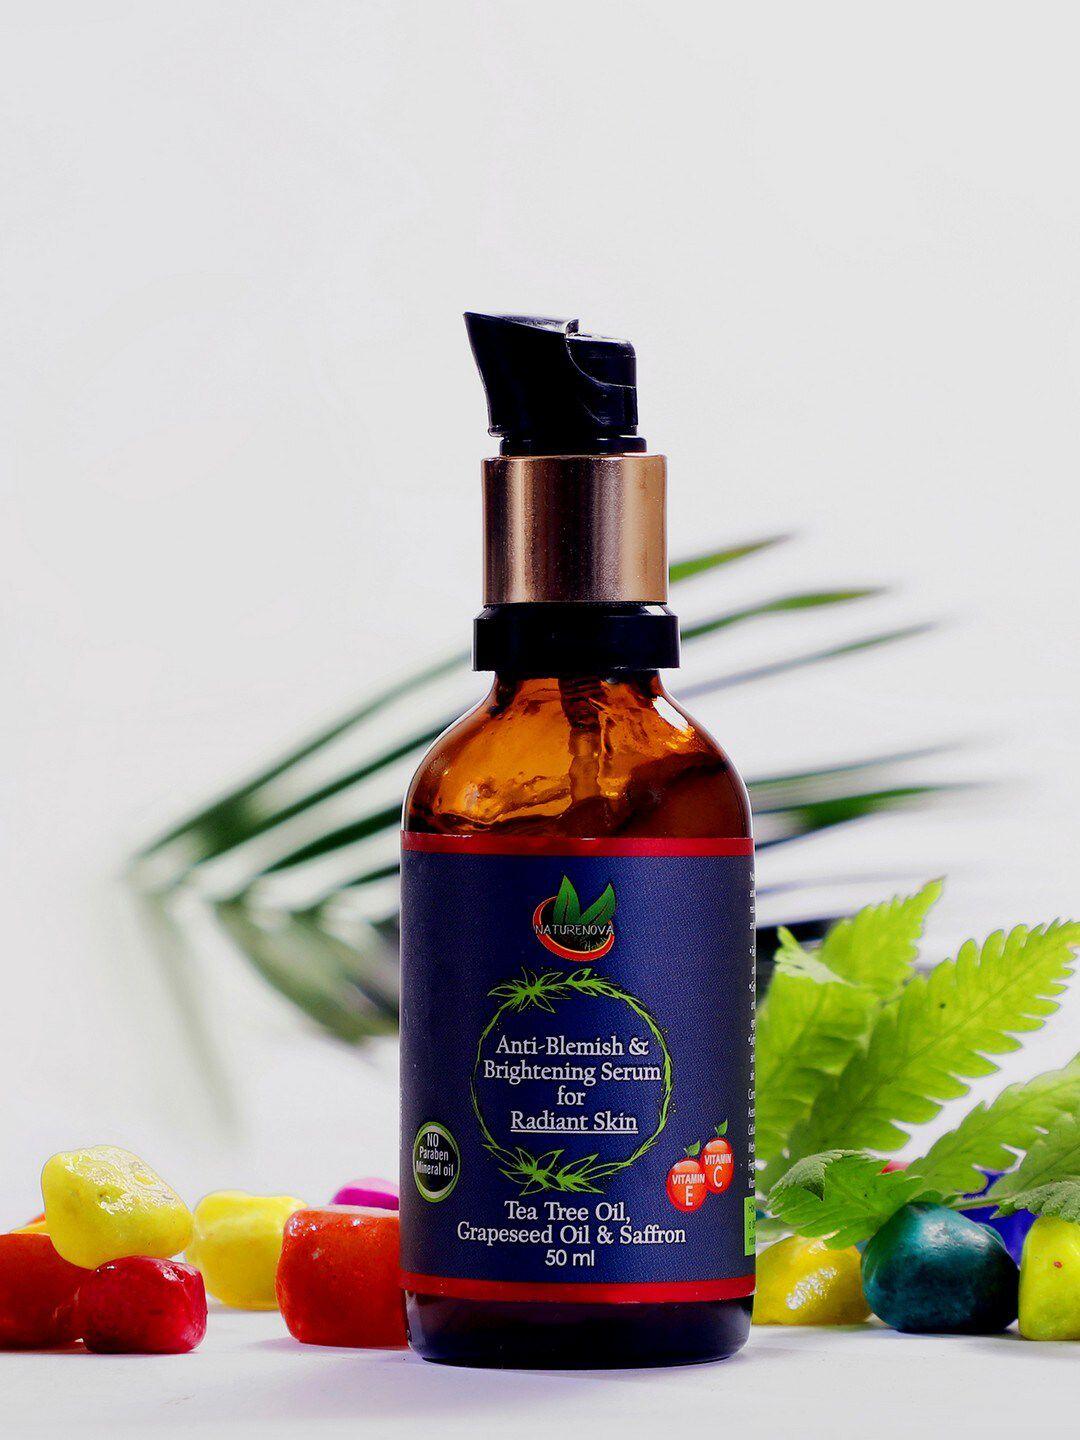 naturenova herbals anti-blemish & brightening serum for radiant skin 50 ml